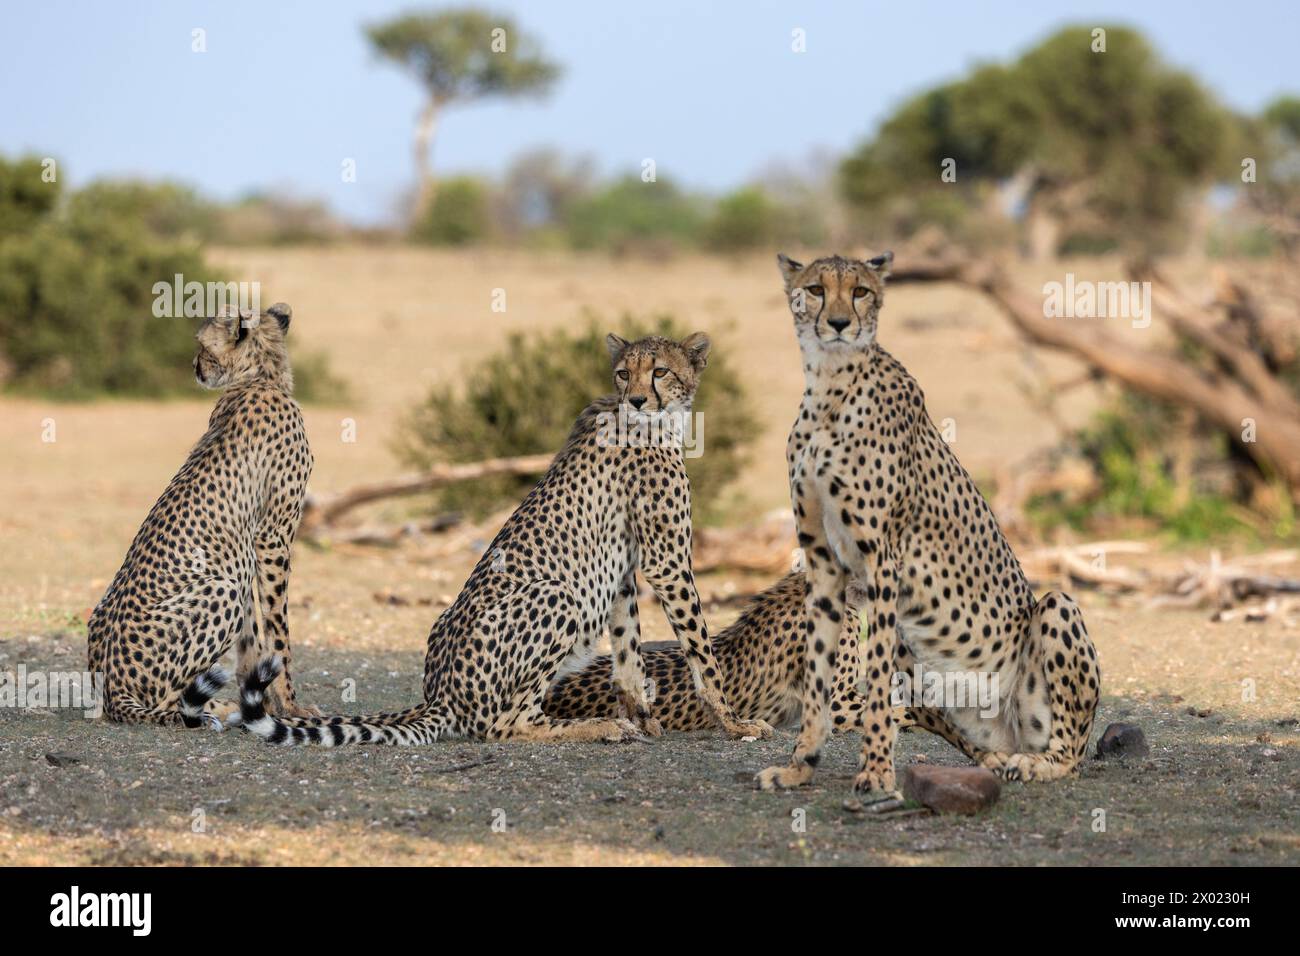 Cheetah (Acinonyx jubatus), Mashatu game reserve, Botswana Stock Photo